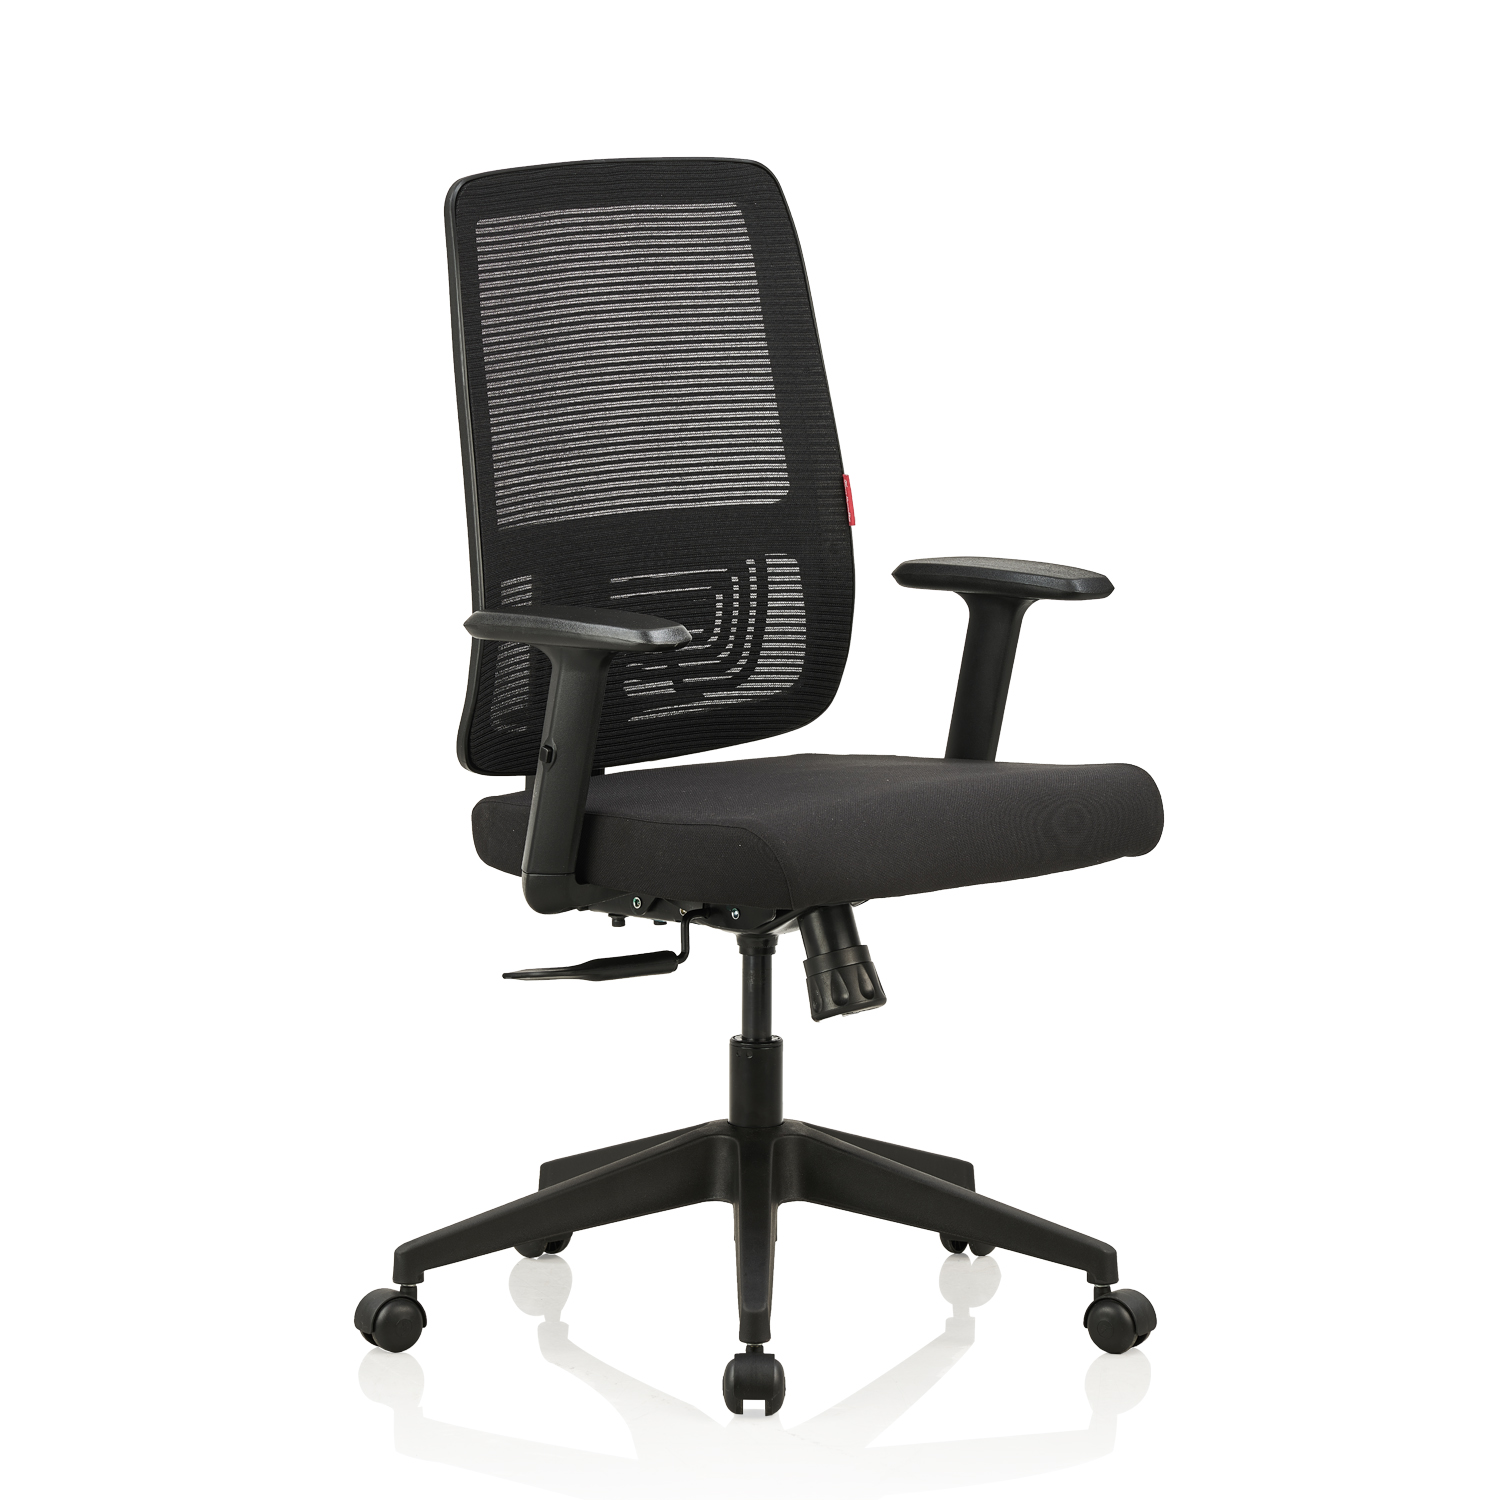 Office chair-Versa